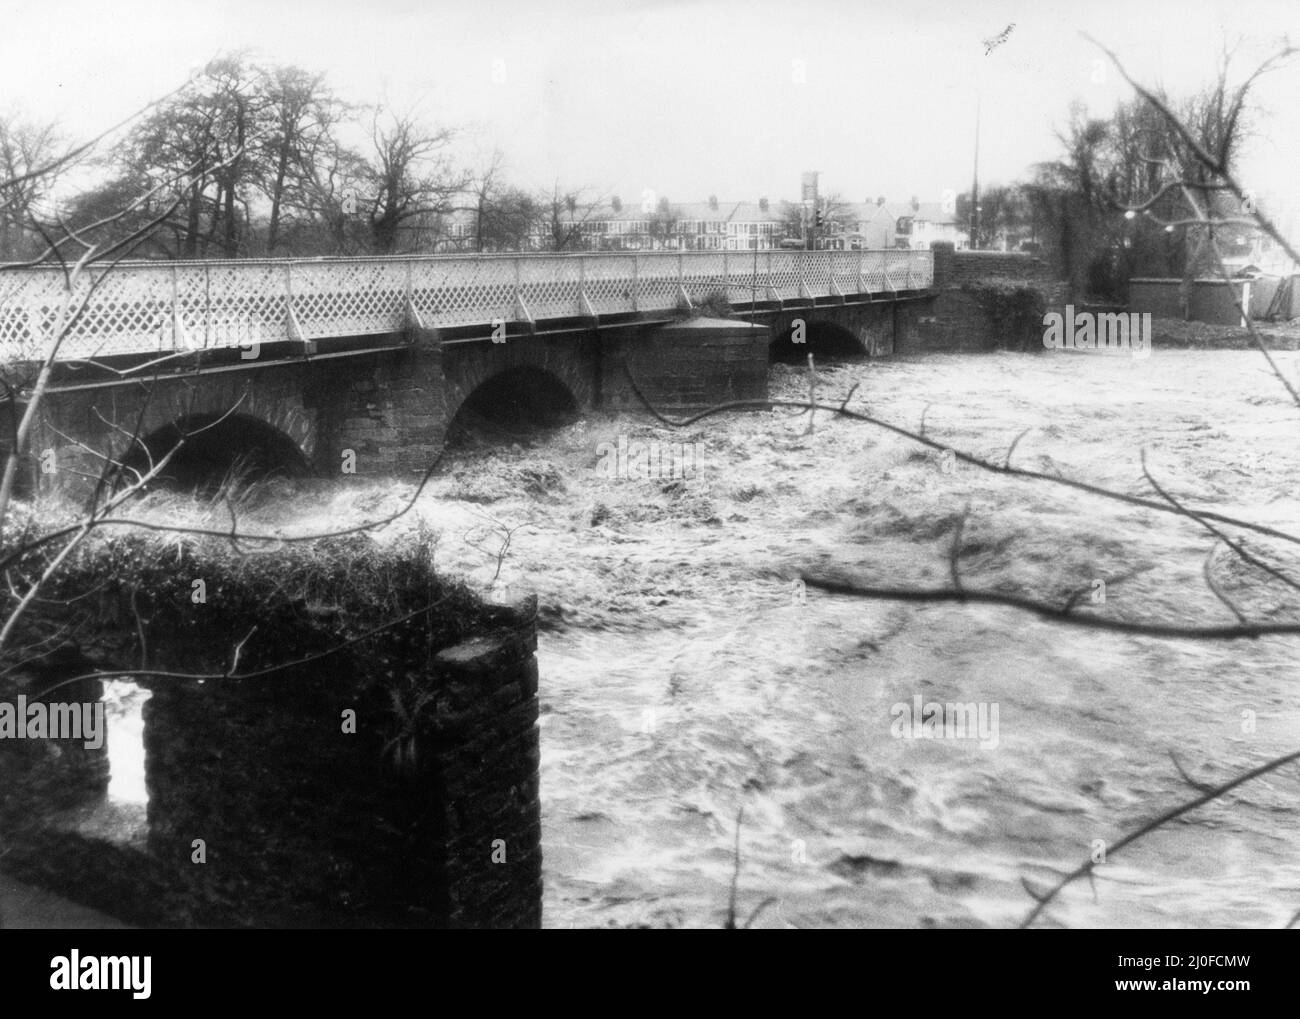 Cardiff Floods 1979, la nostra foto mostra ... L'acqua sale fino al vecchio ponte Llandaff North questo pomeriggio, mentre le inondazioni aumentano, la polizia avverte che il ponte è in pericolo immediato di collasso, Cardiff, giovedì 27th dicembre 1979. Foto Stock